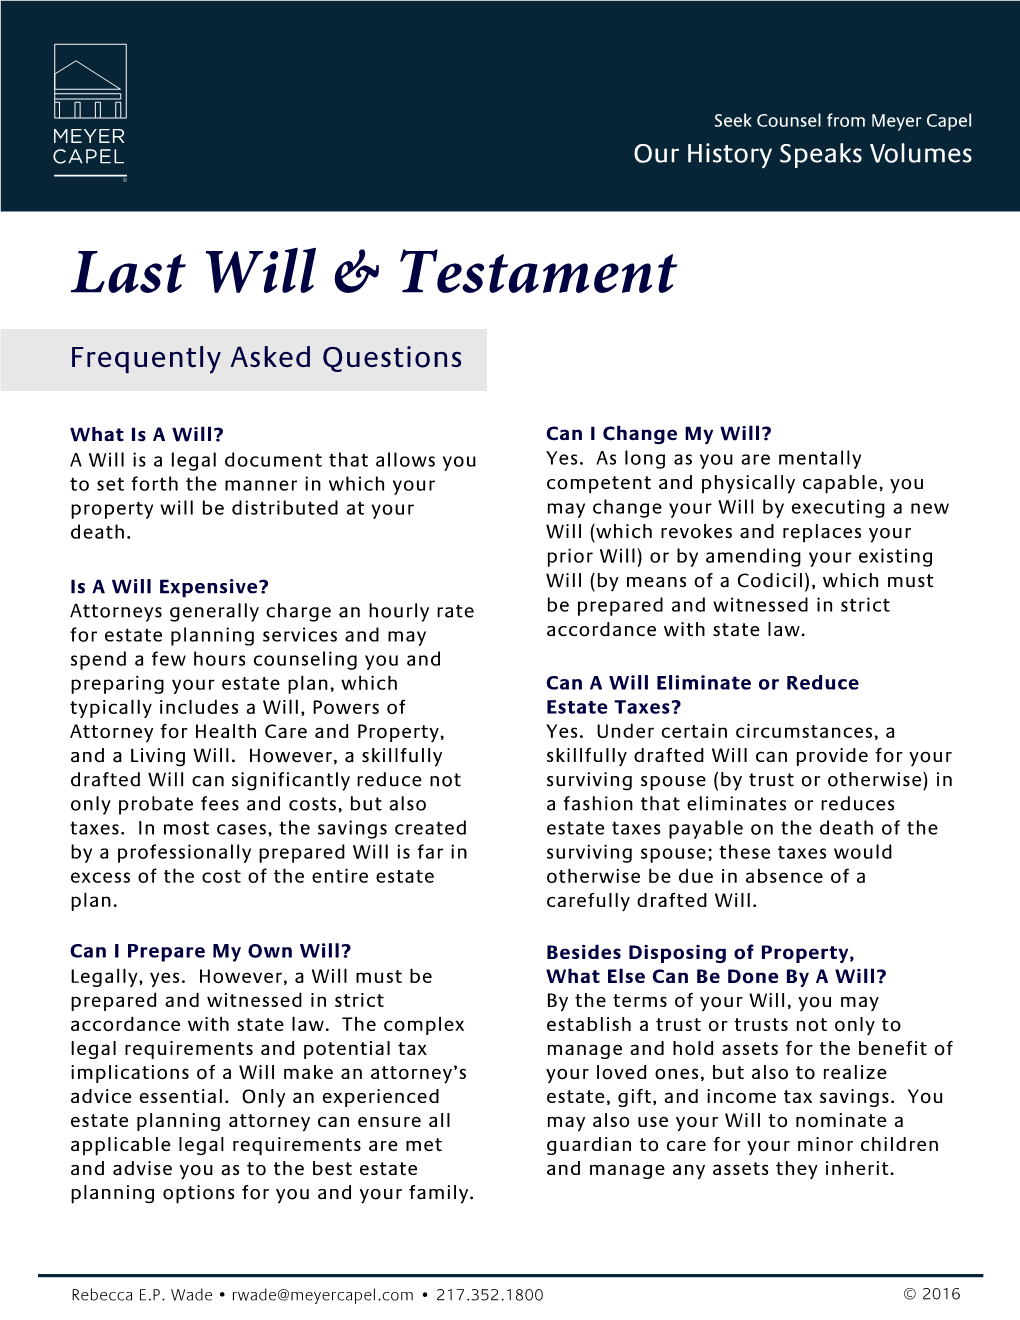 Last Will & Testament Faqs